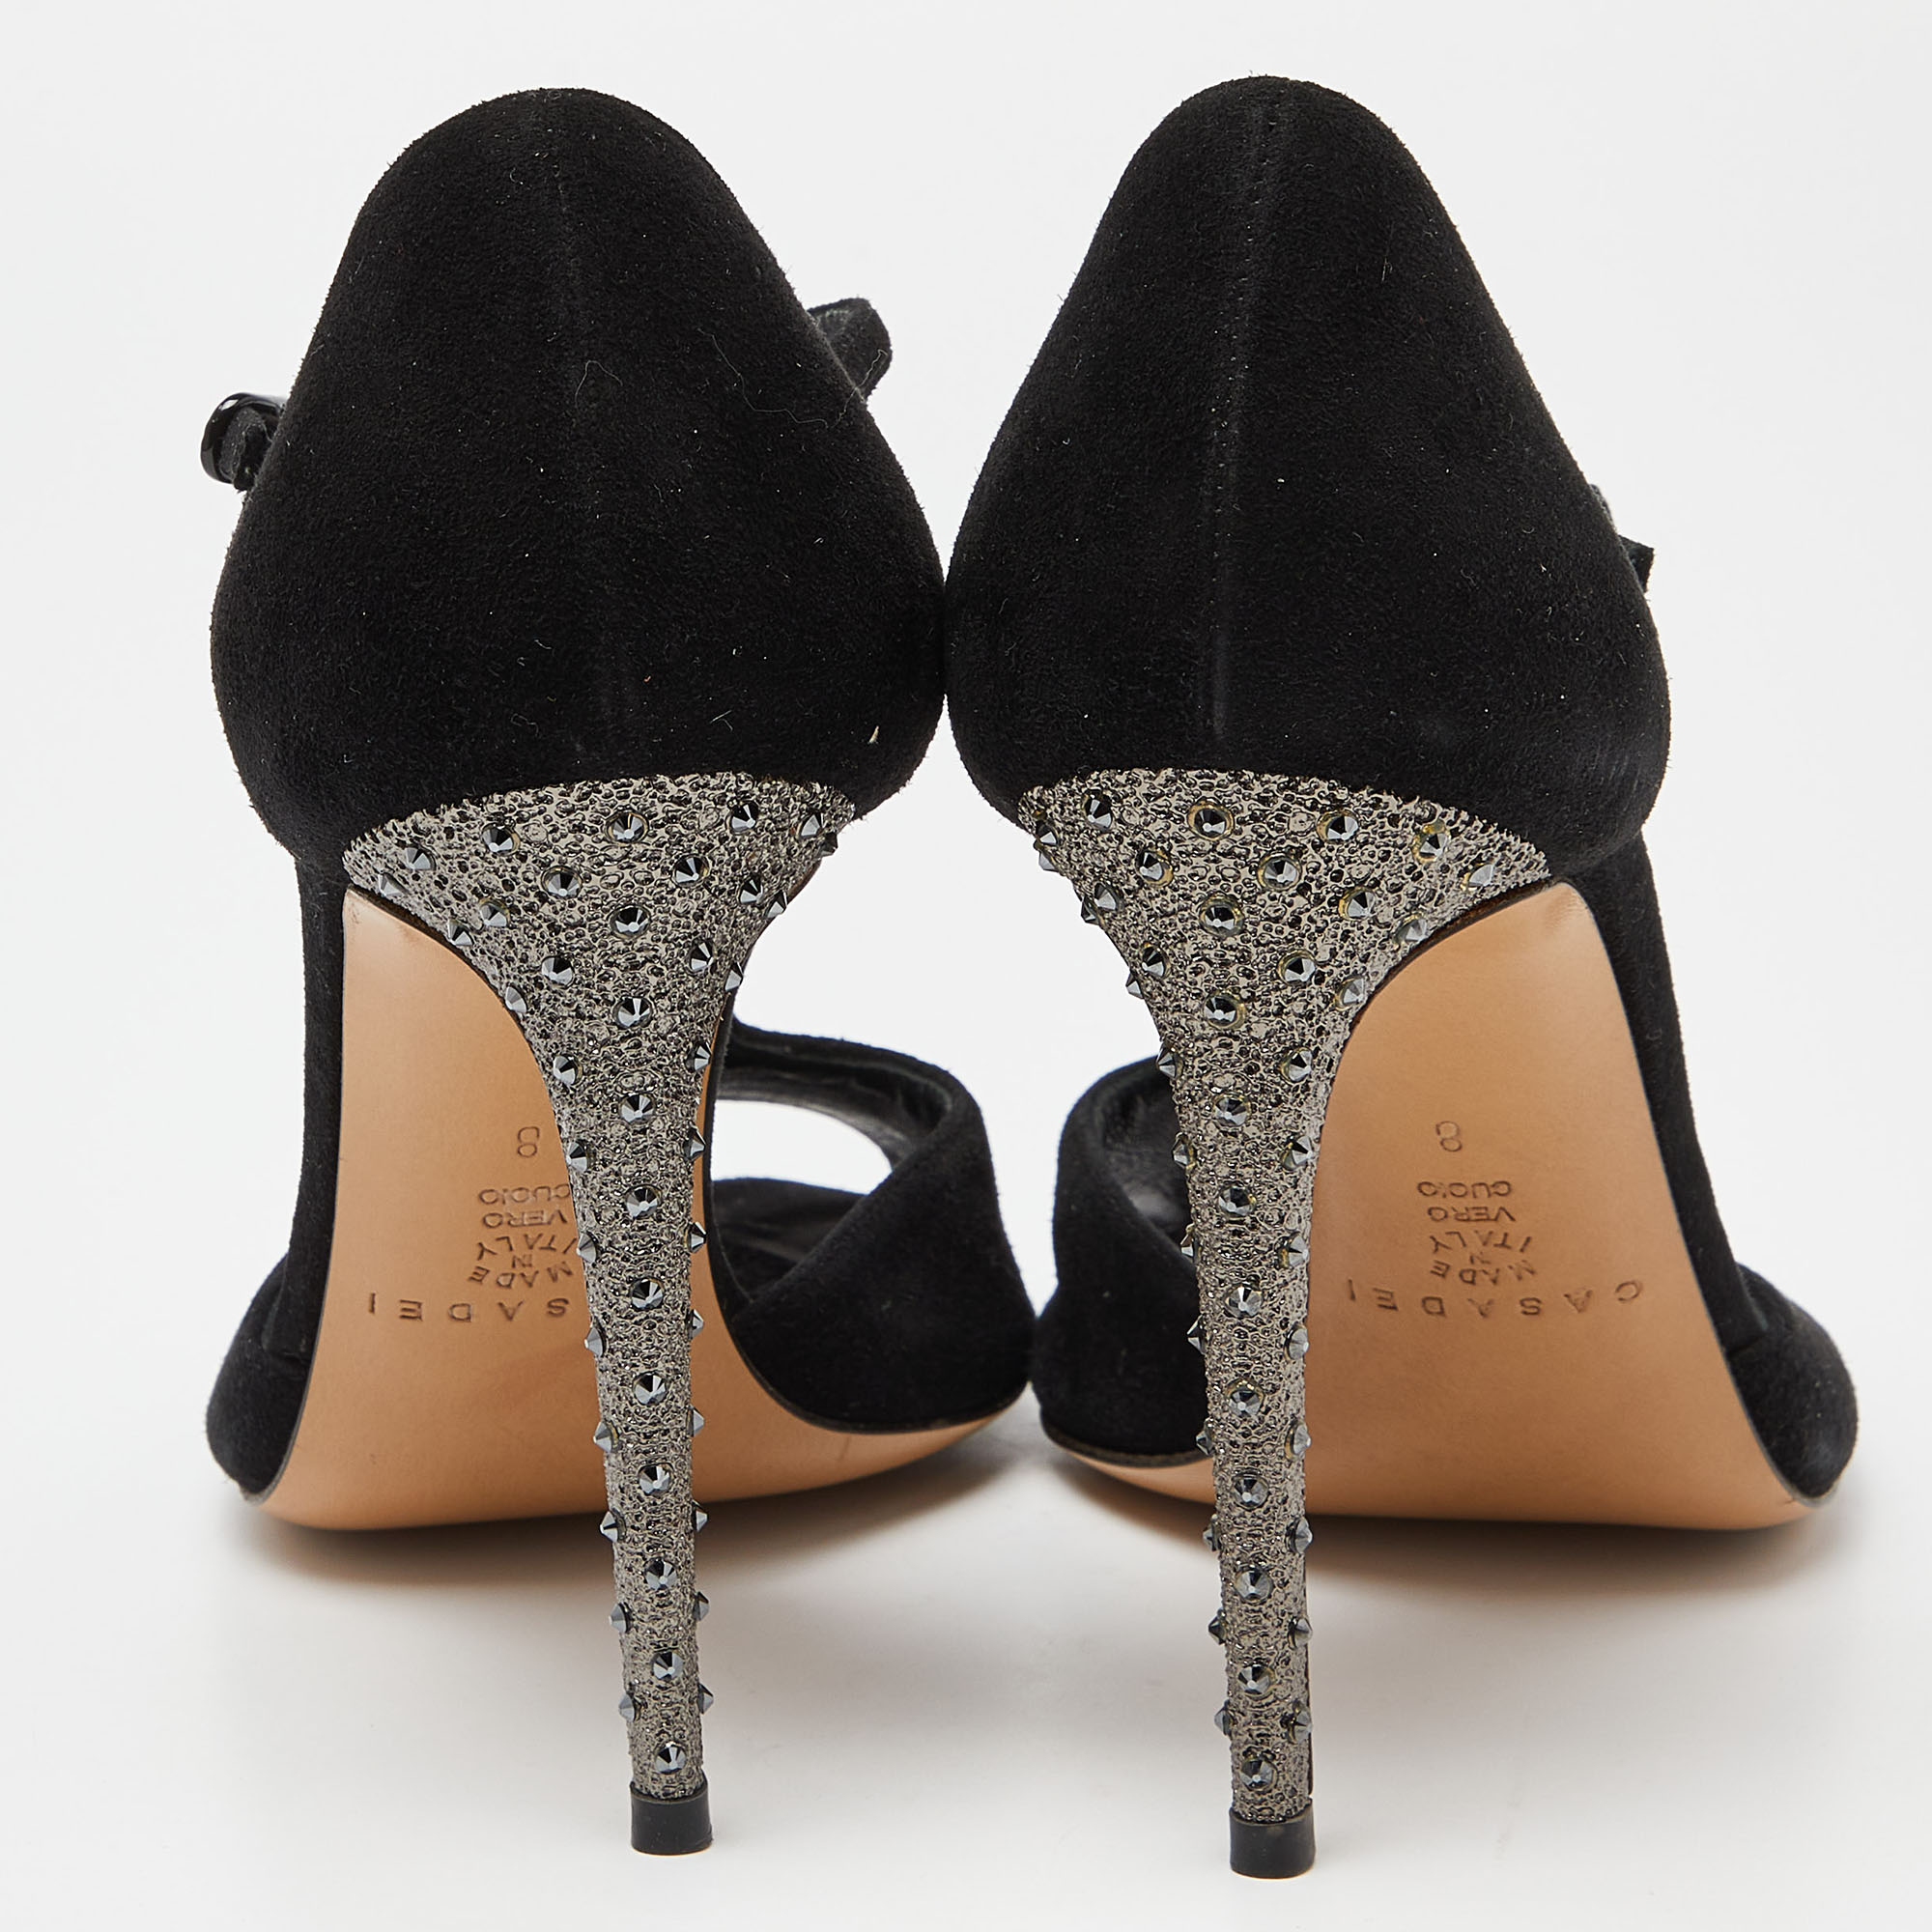 Casadei Black Suede Crystal Embellished Heel Ankle Wrap Sandals Size 38